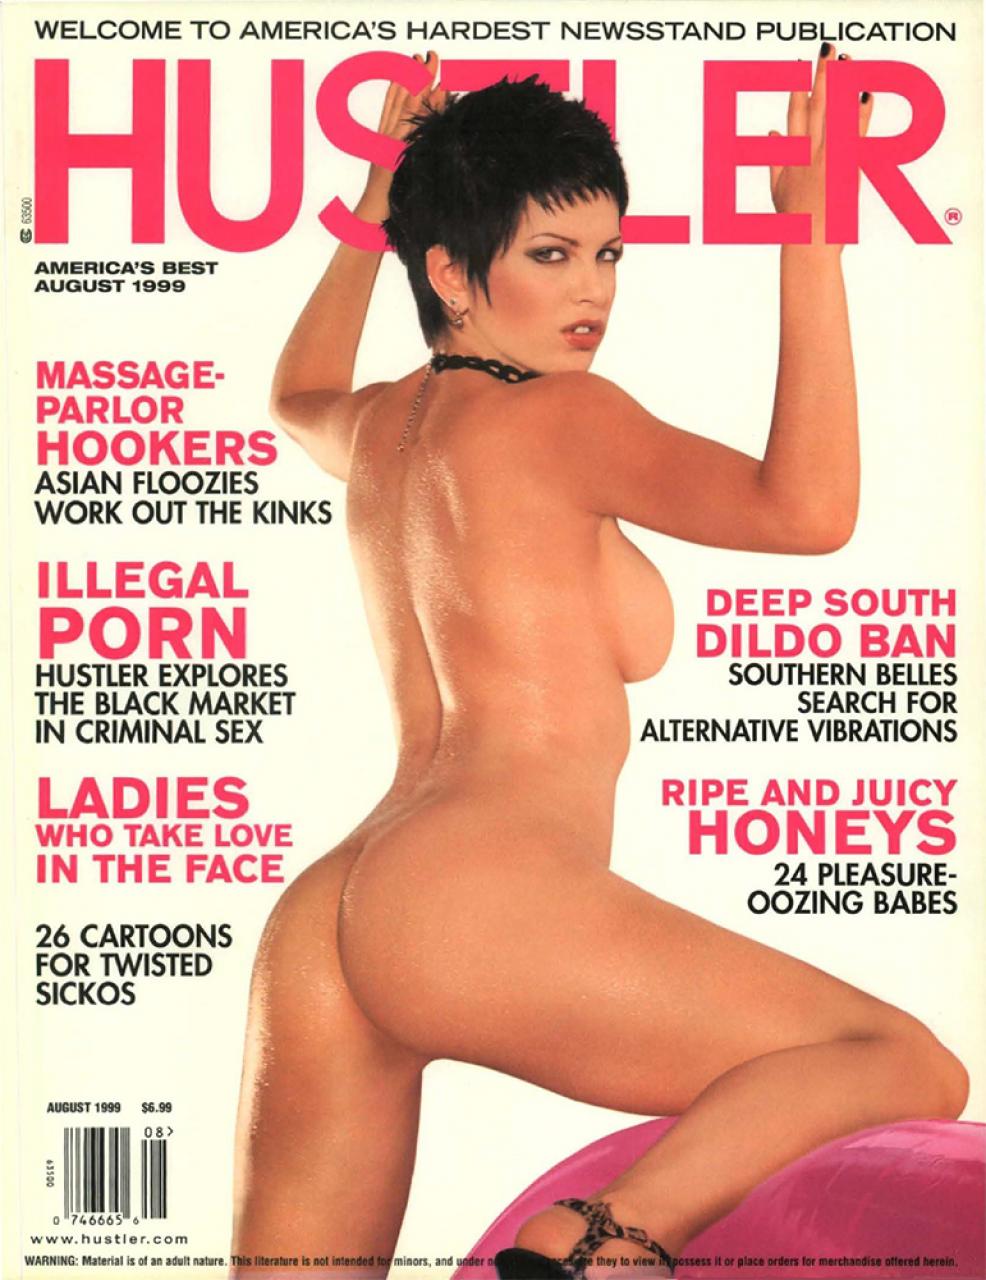 August 1999 - HUSTLER Magazine.